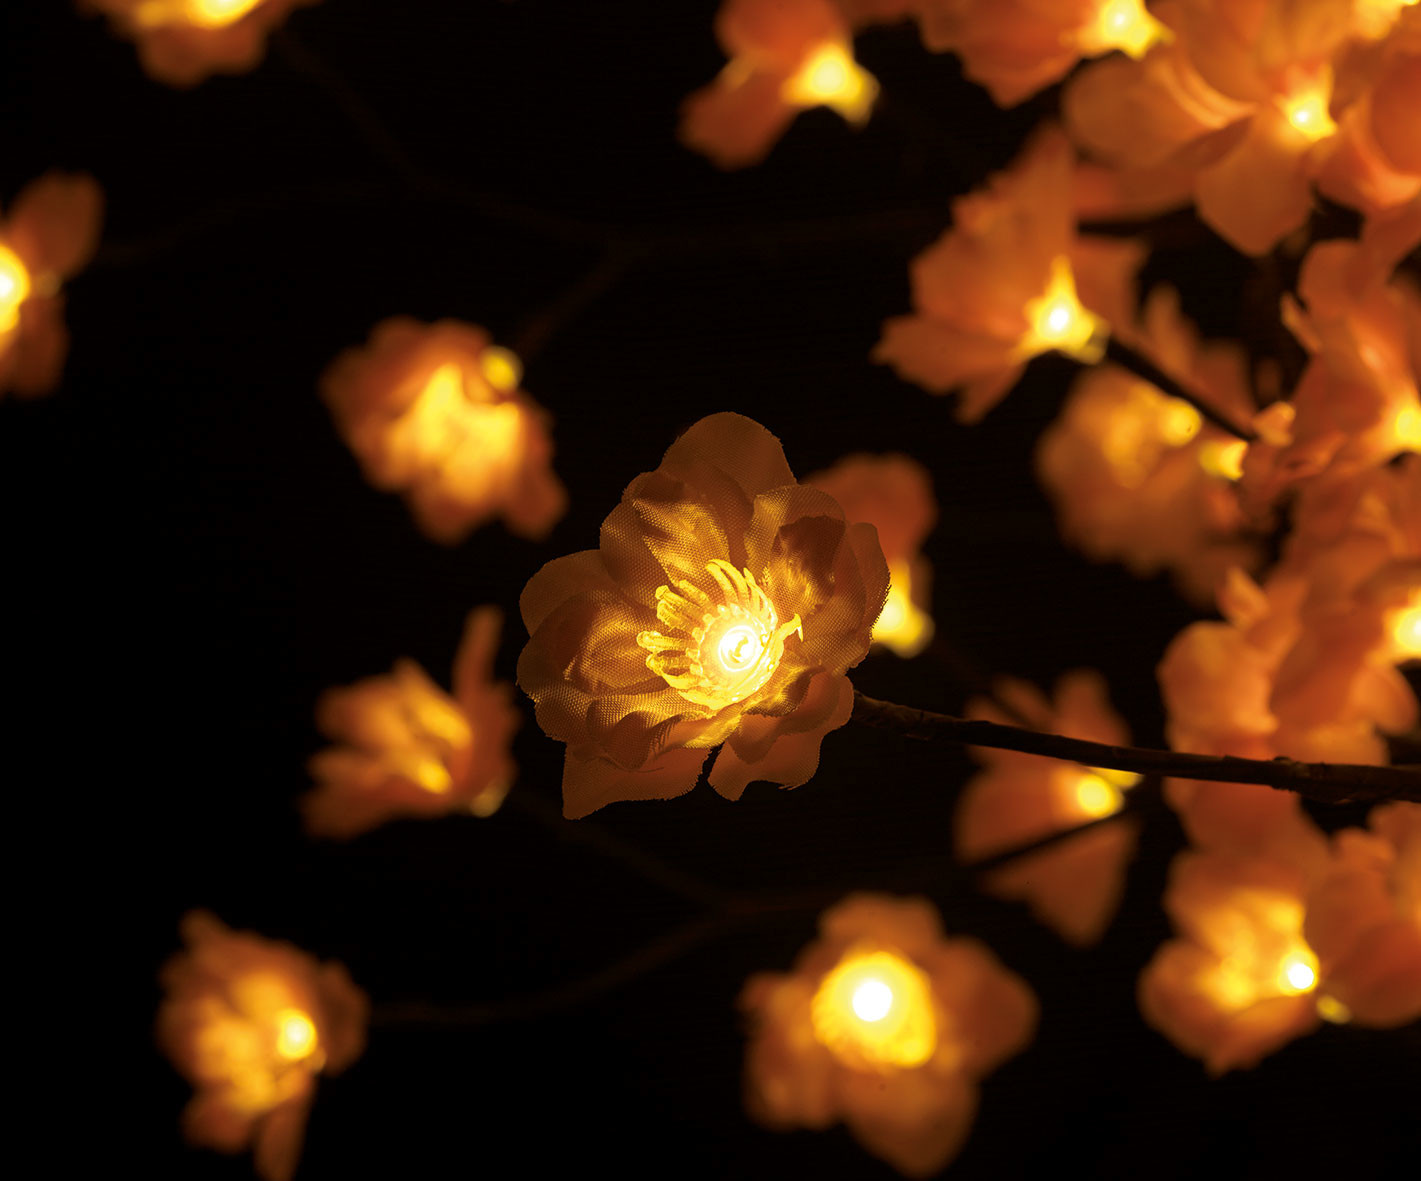 VINGO LED Arbre Fleur de Cerisier 150cm|Blanc|Arbre Lumineux de décoration de Noël 160 LED IP44 pour Base métallique intérieure et extérieure Stable